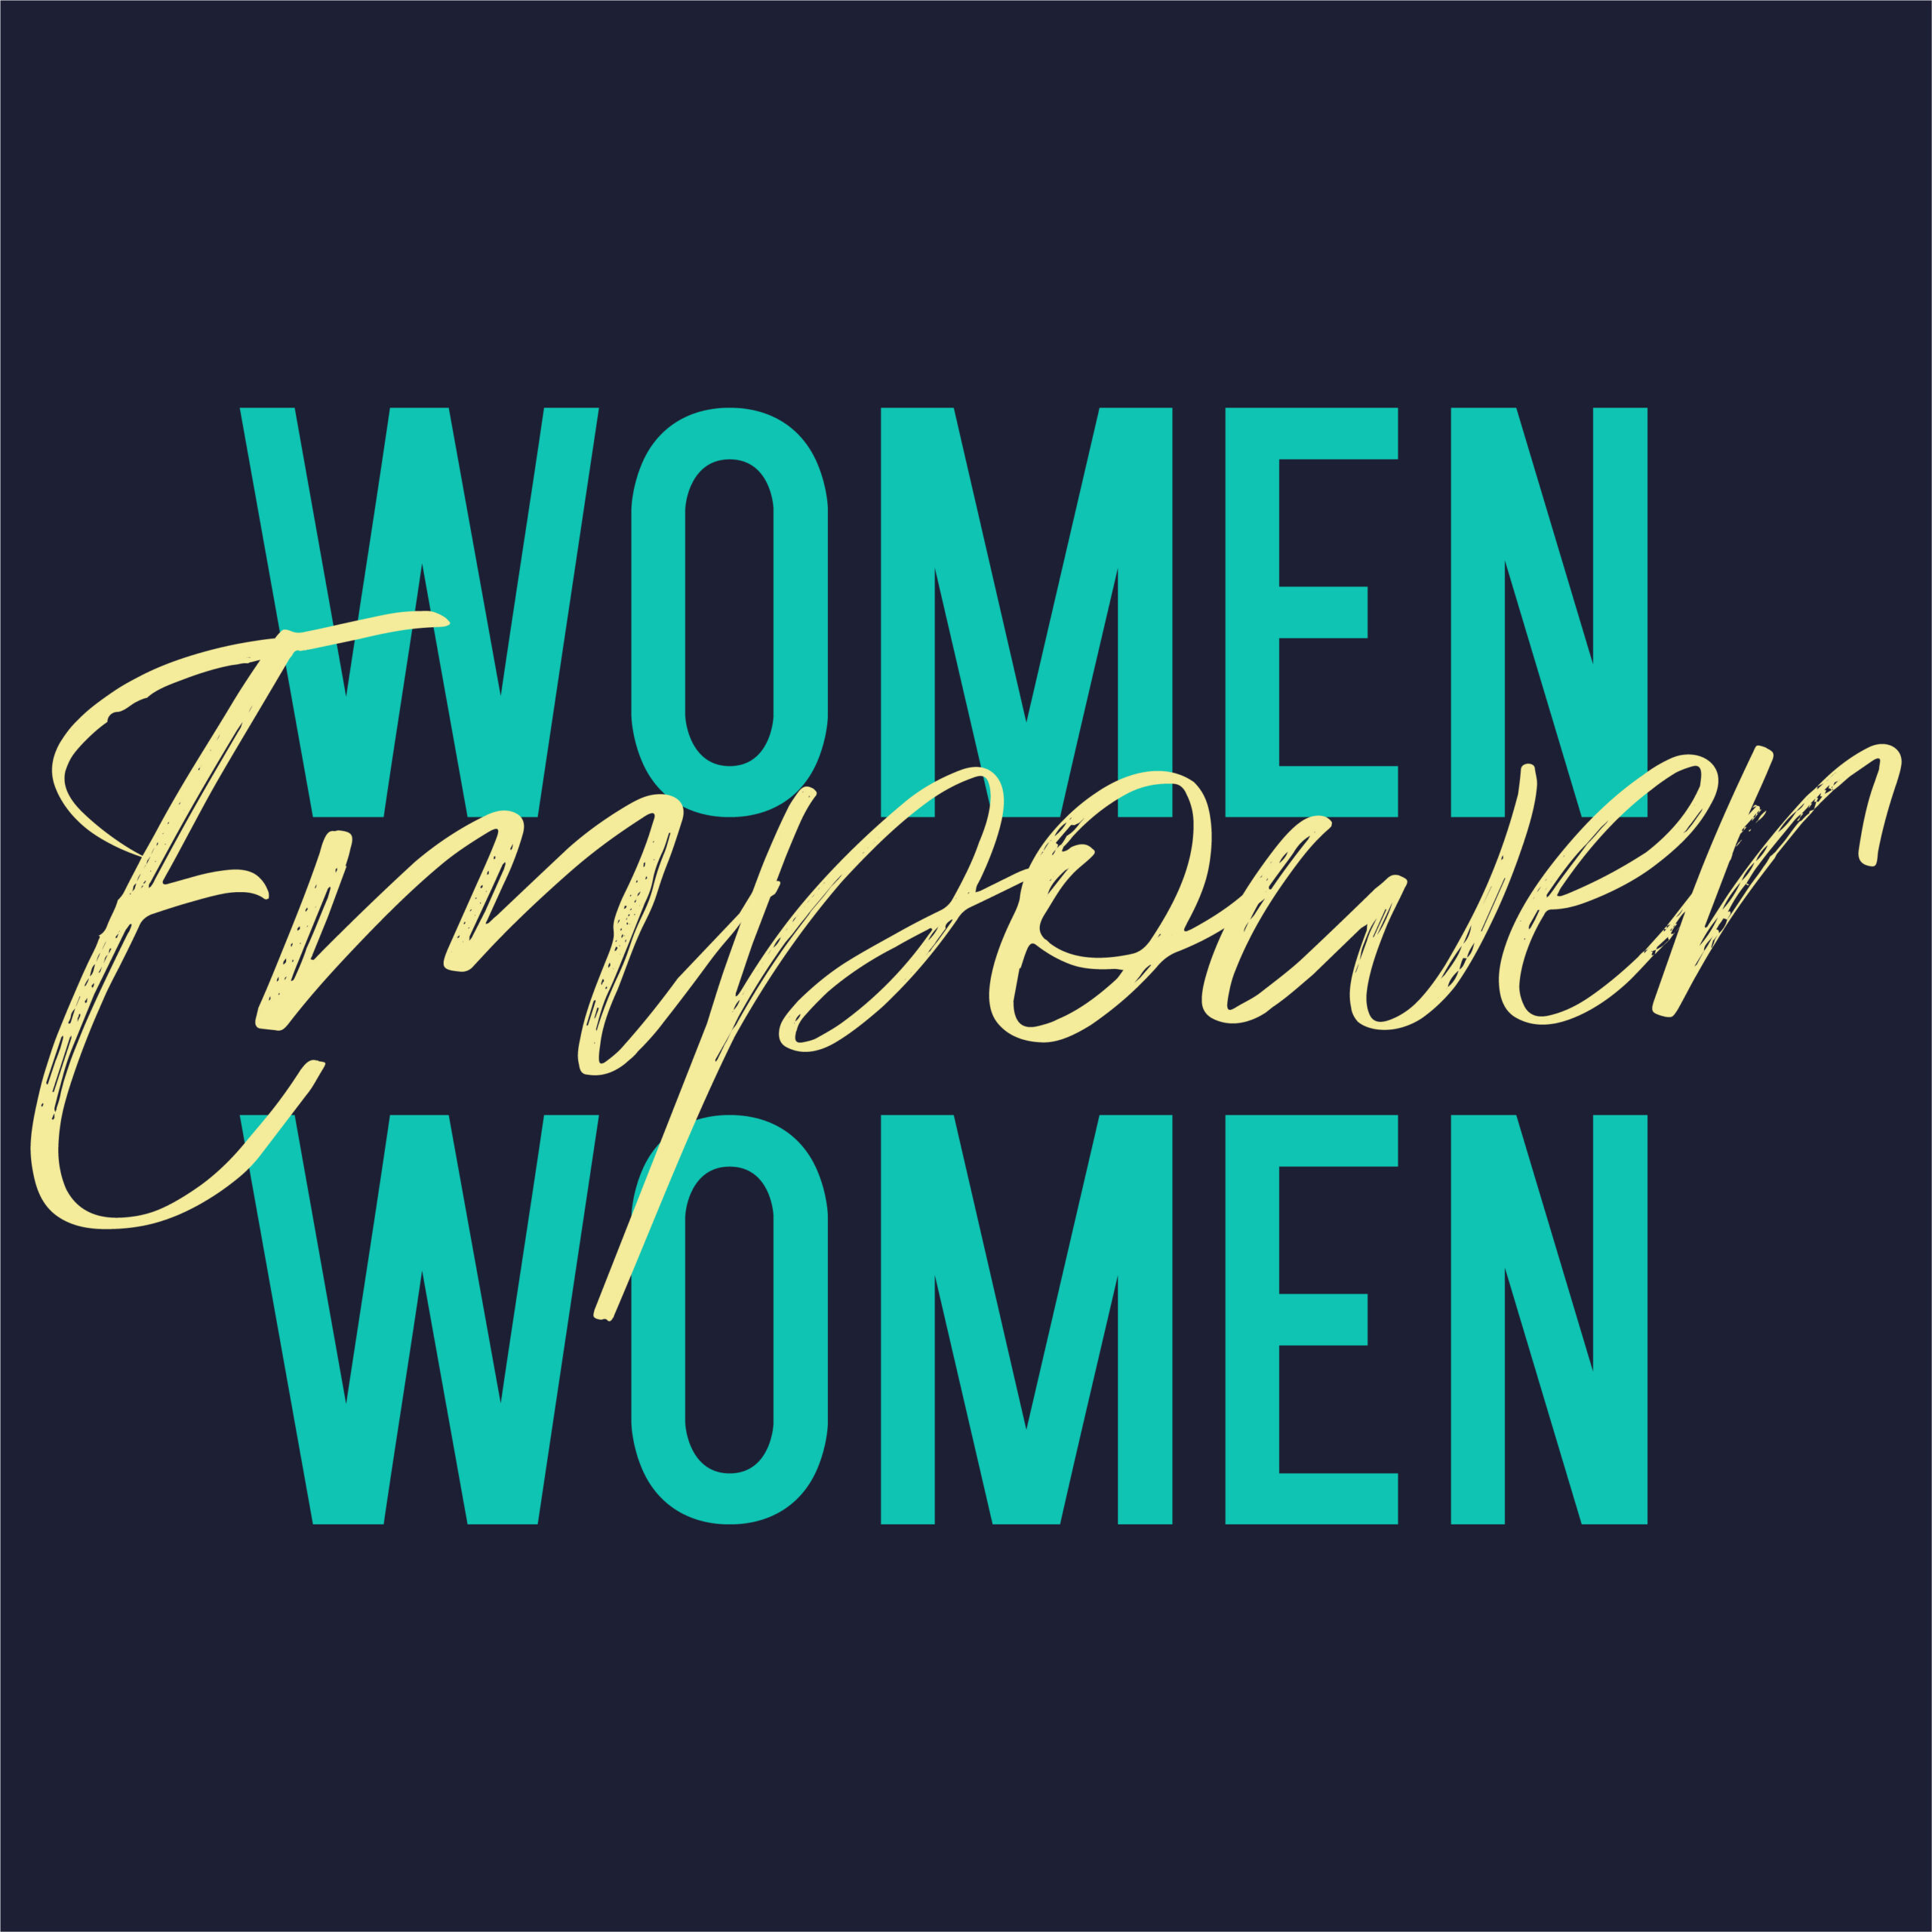 Women Empower Women Slogan for Tshirt Graphic Vector Print